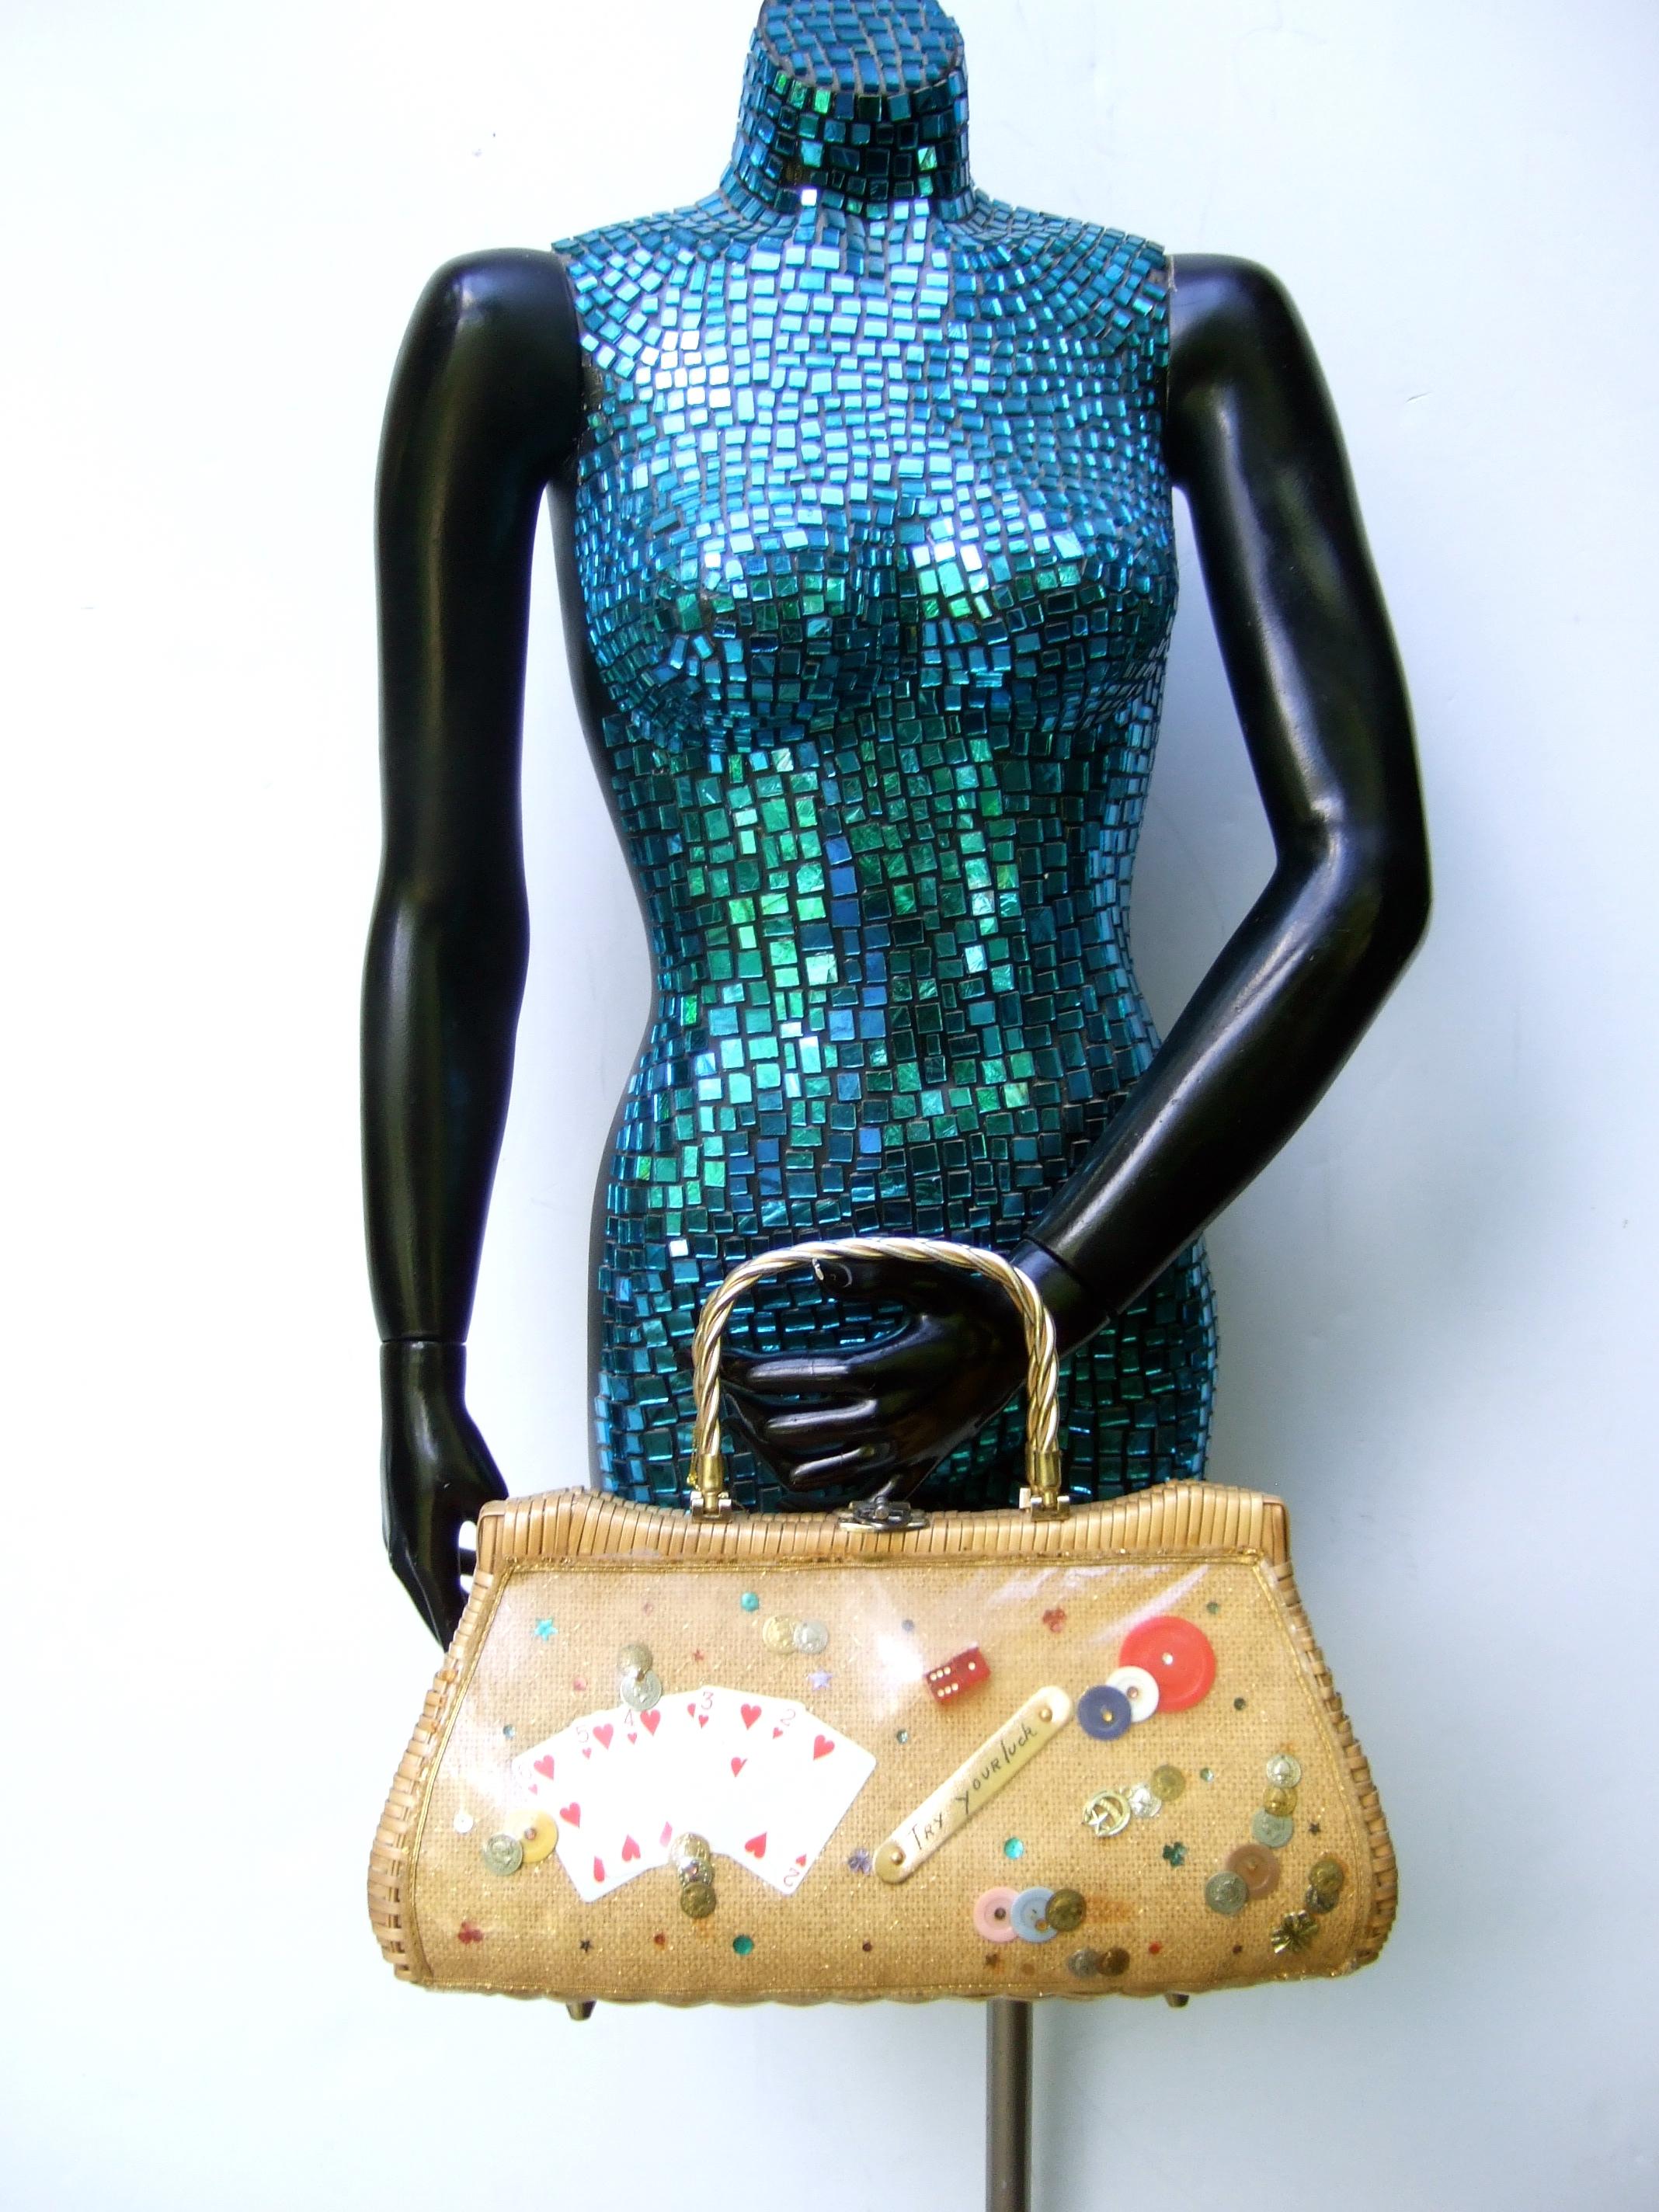 Whimsical Gambling Themed Woven Wicker Retro Handbag c 1960s For Sale 2